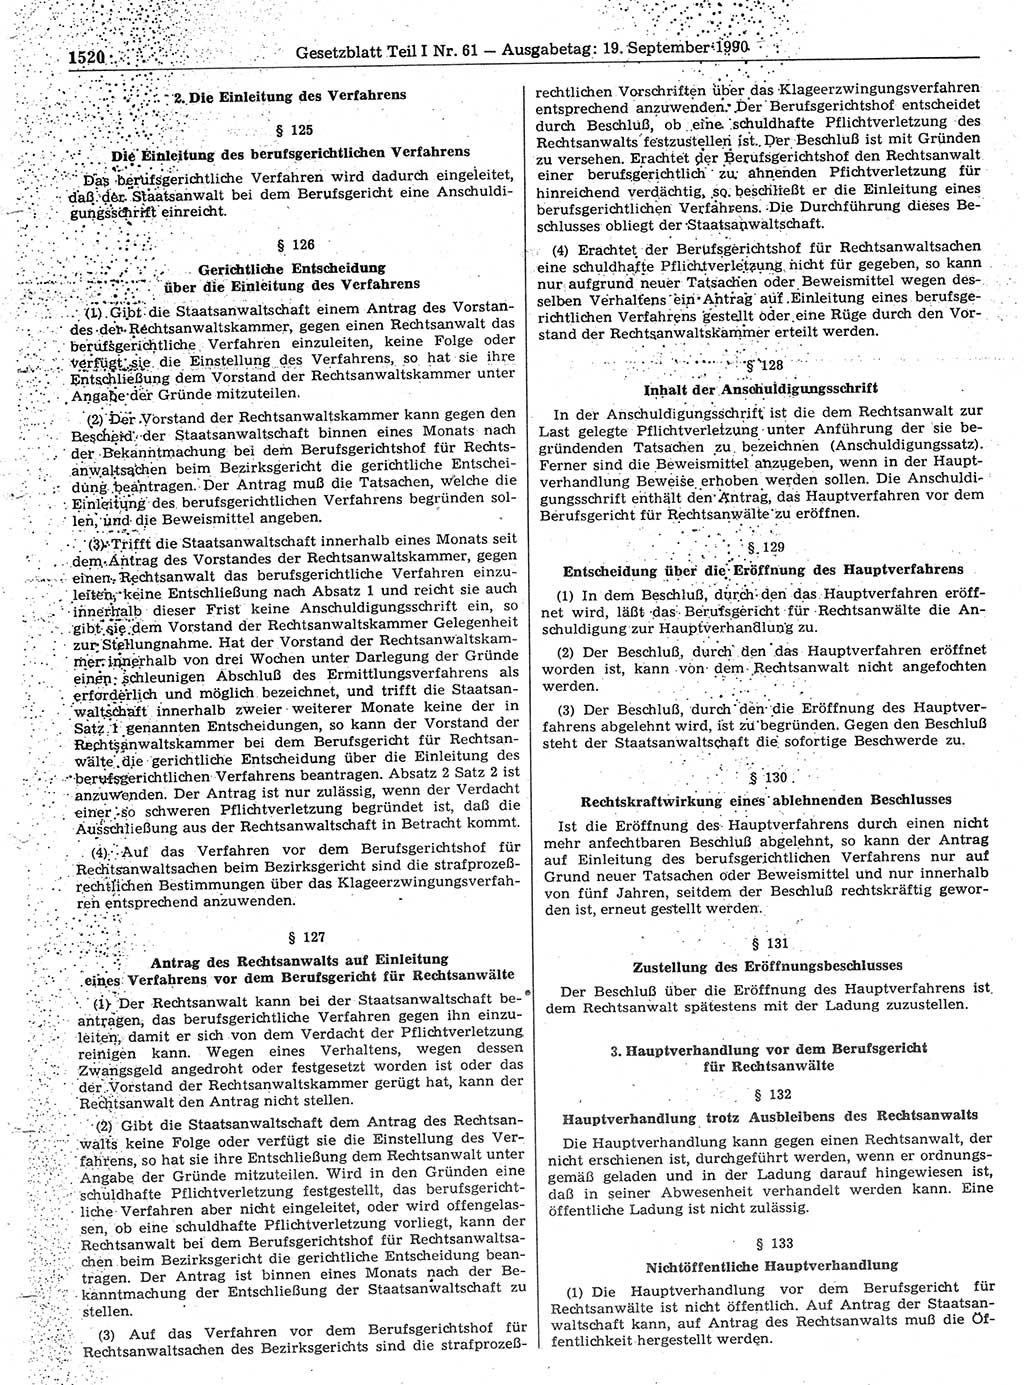 Gesetzblatt (GBl.) der Deutschen Demokratischen Republik (DDR) Teil Ⅰ 1990, Seite 1520 (GBl. DDR Ⅰ 1990, S. 1520)